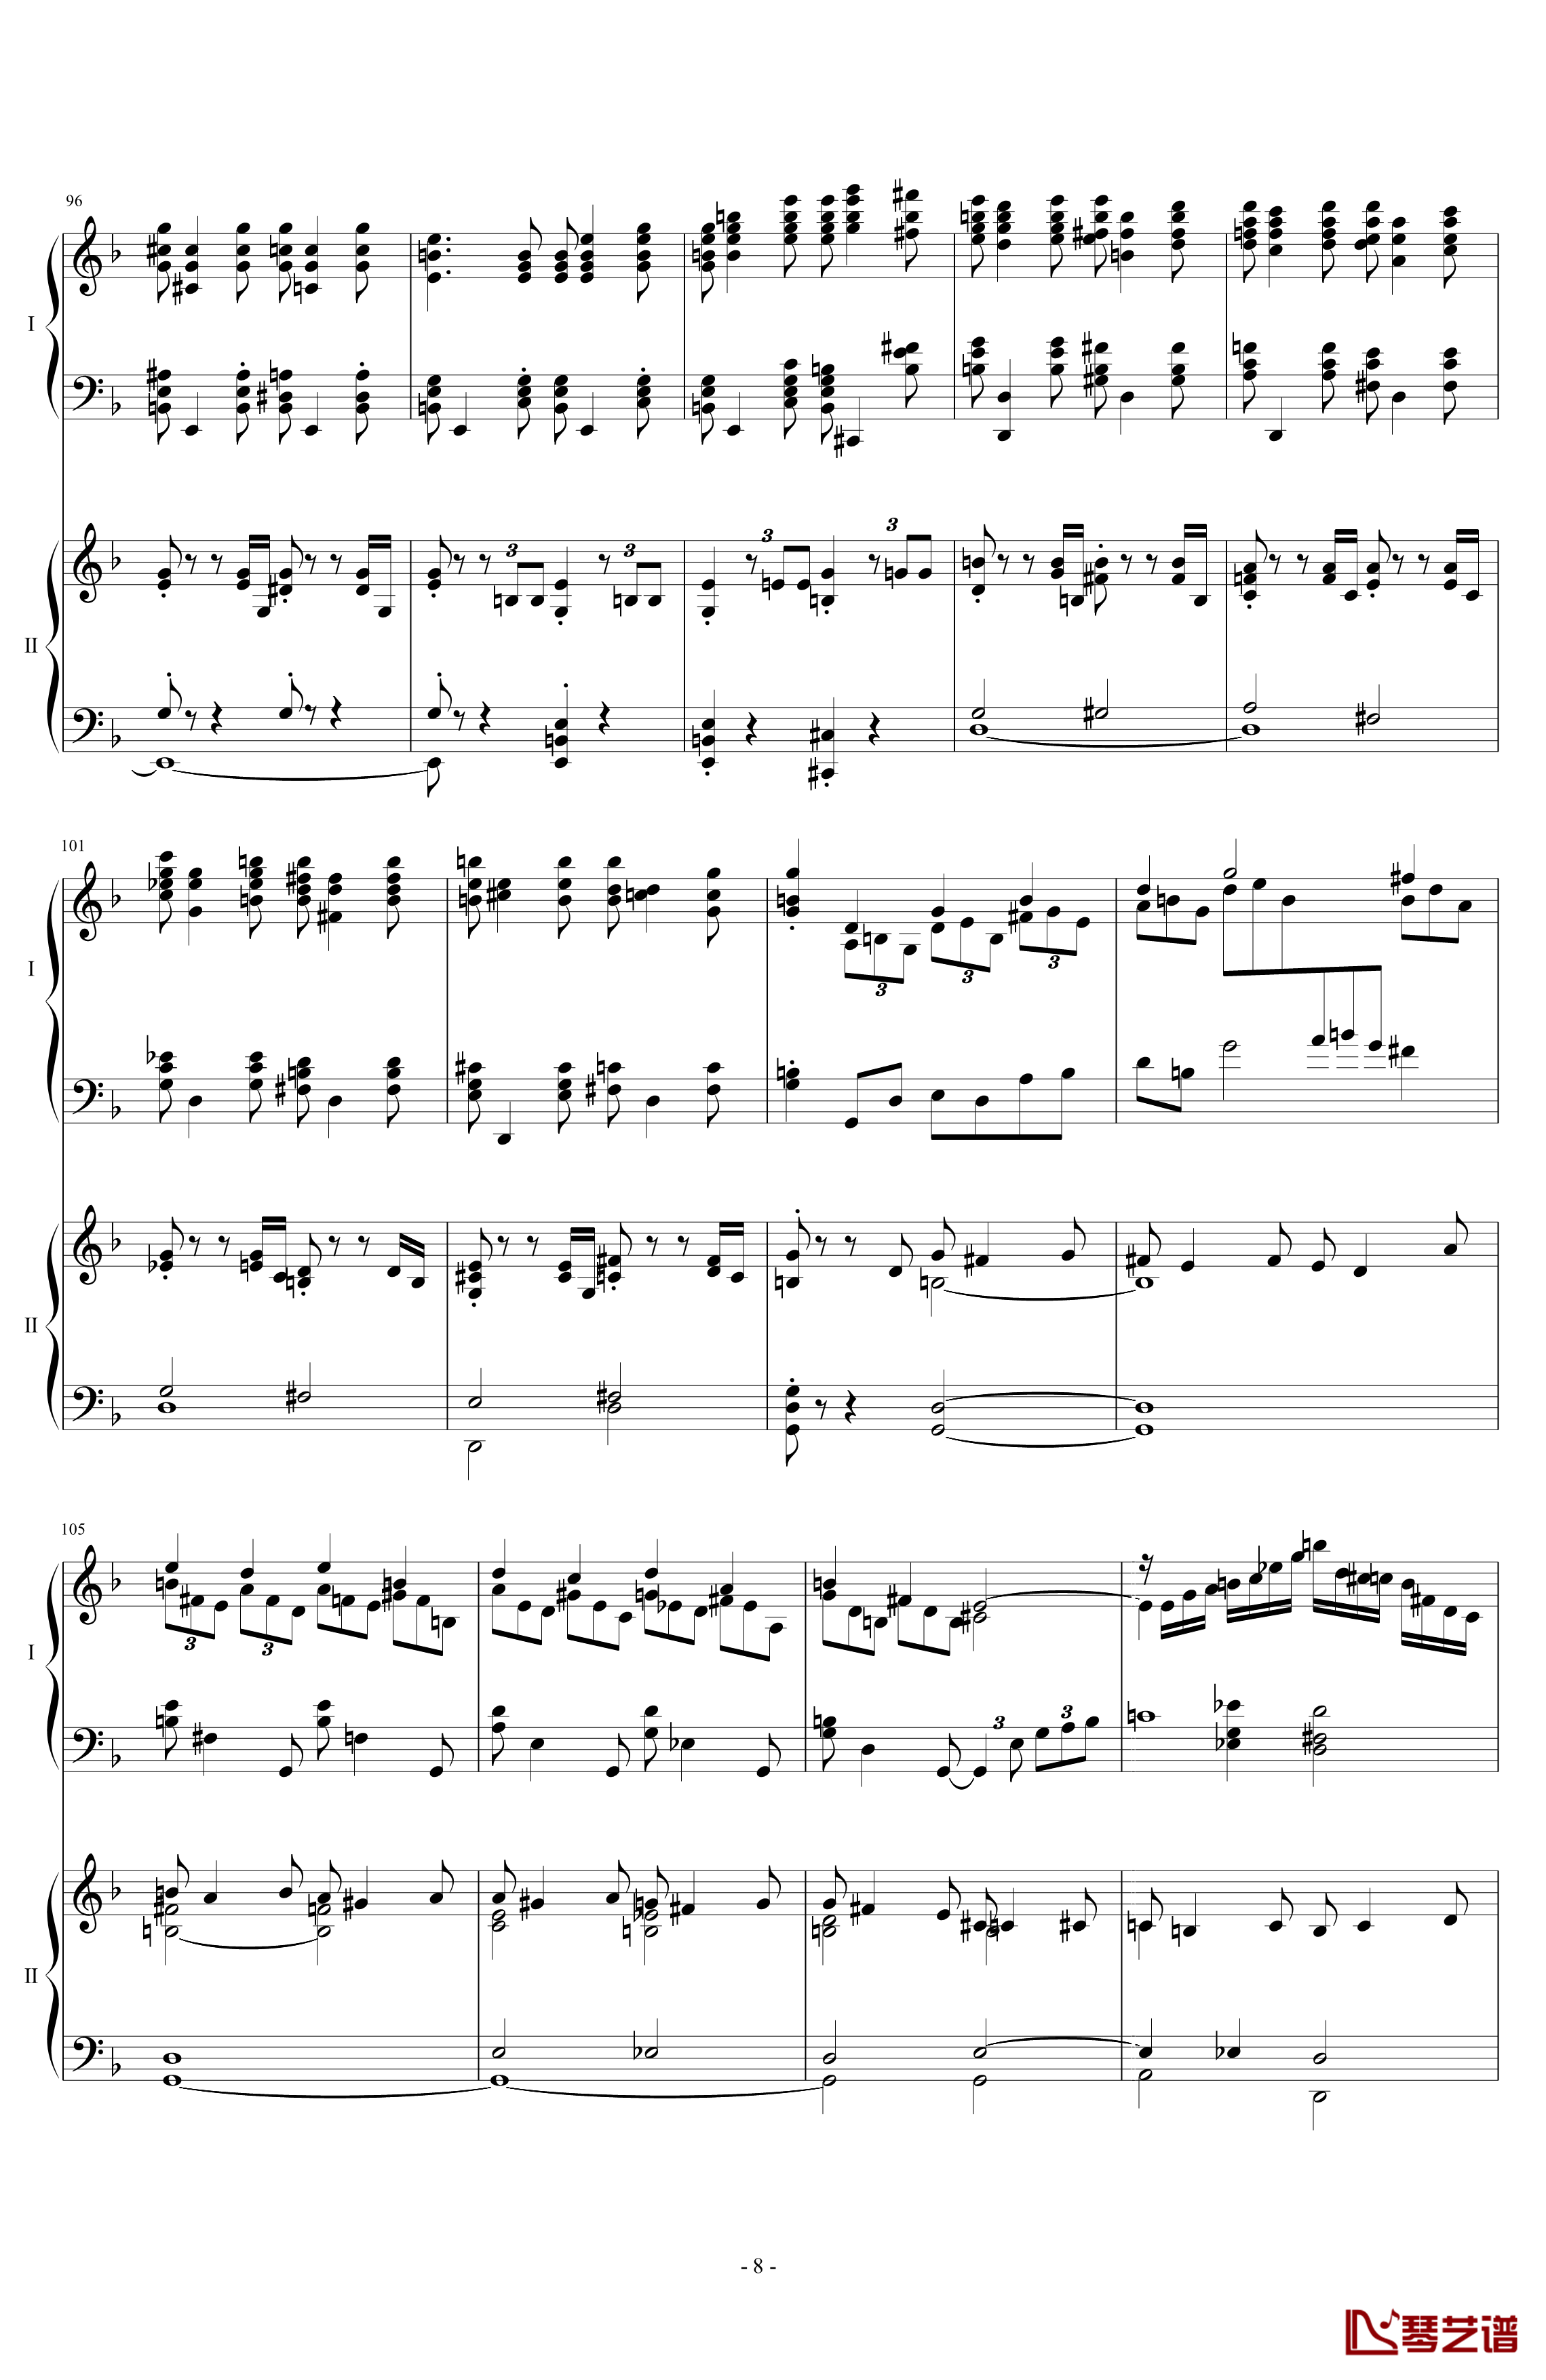 拉三第三乐章41页双钢琴钢琴谱-最难钢琴曲-拉赫马尼若夫8